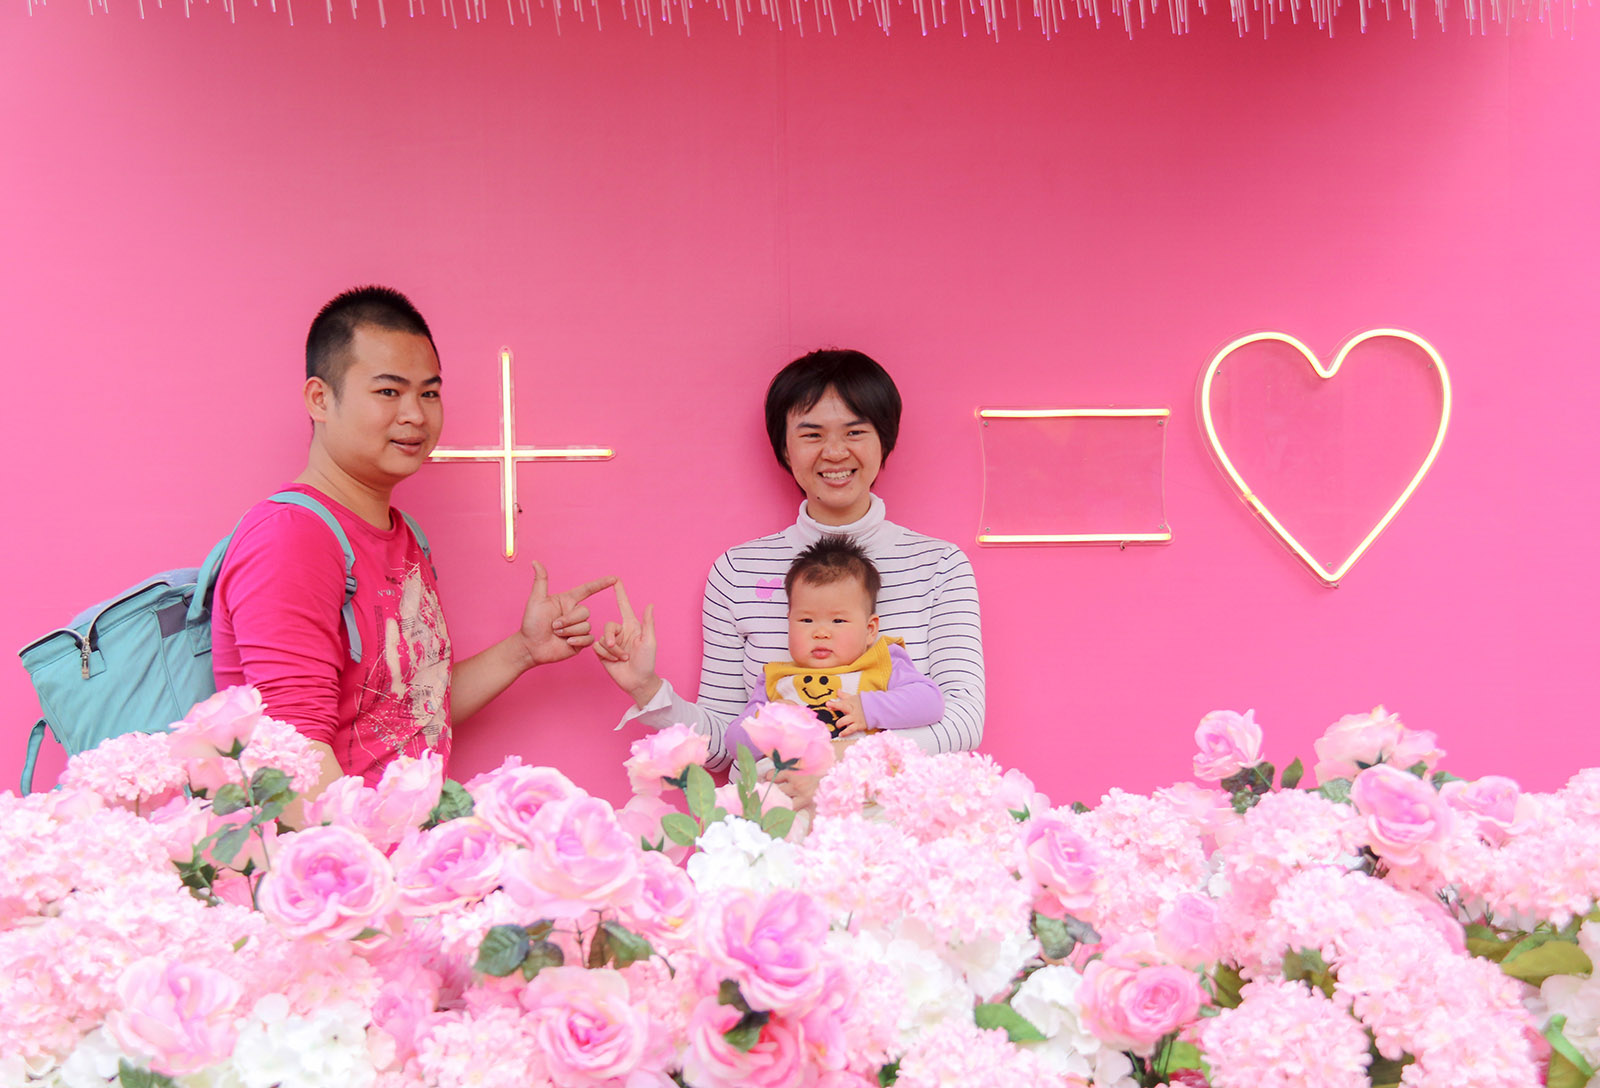 歐嘉怡(高中組)廣東《幸福之家》 姑姑一家在愛的主題背景牆合照，我用相機記錄下這幸福溫馨的時刻。搜索復制